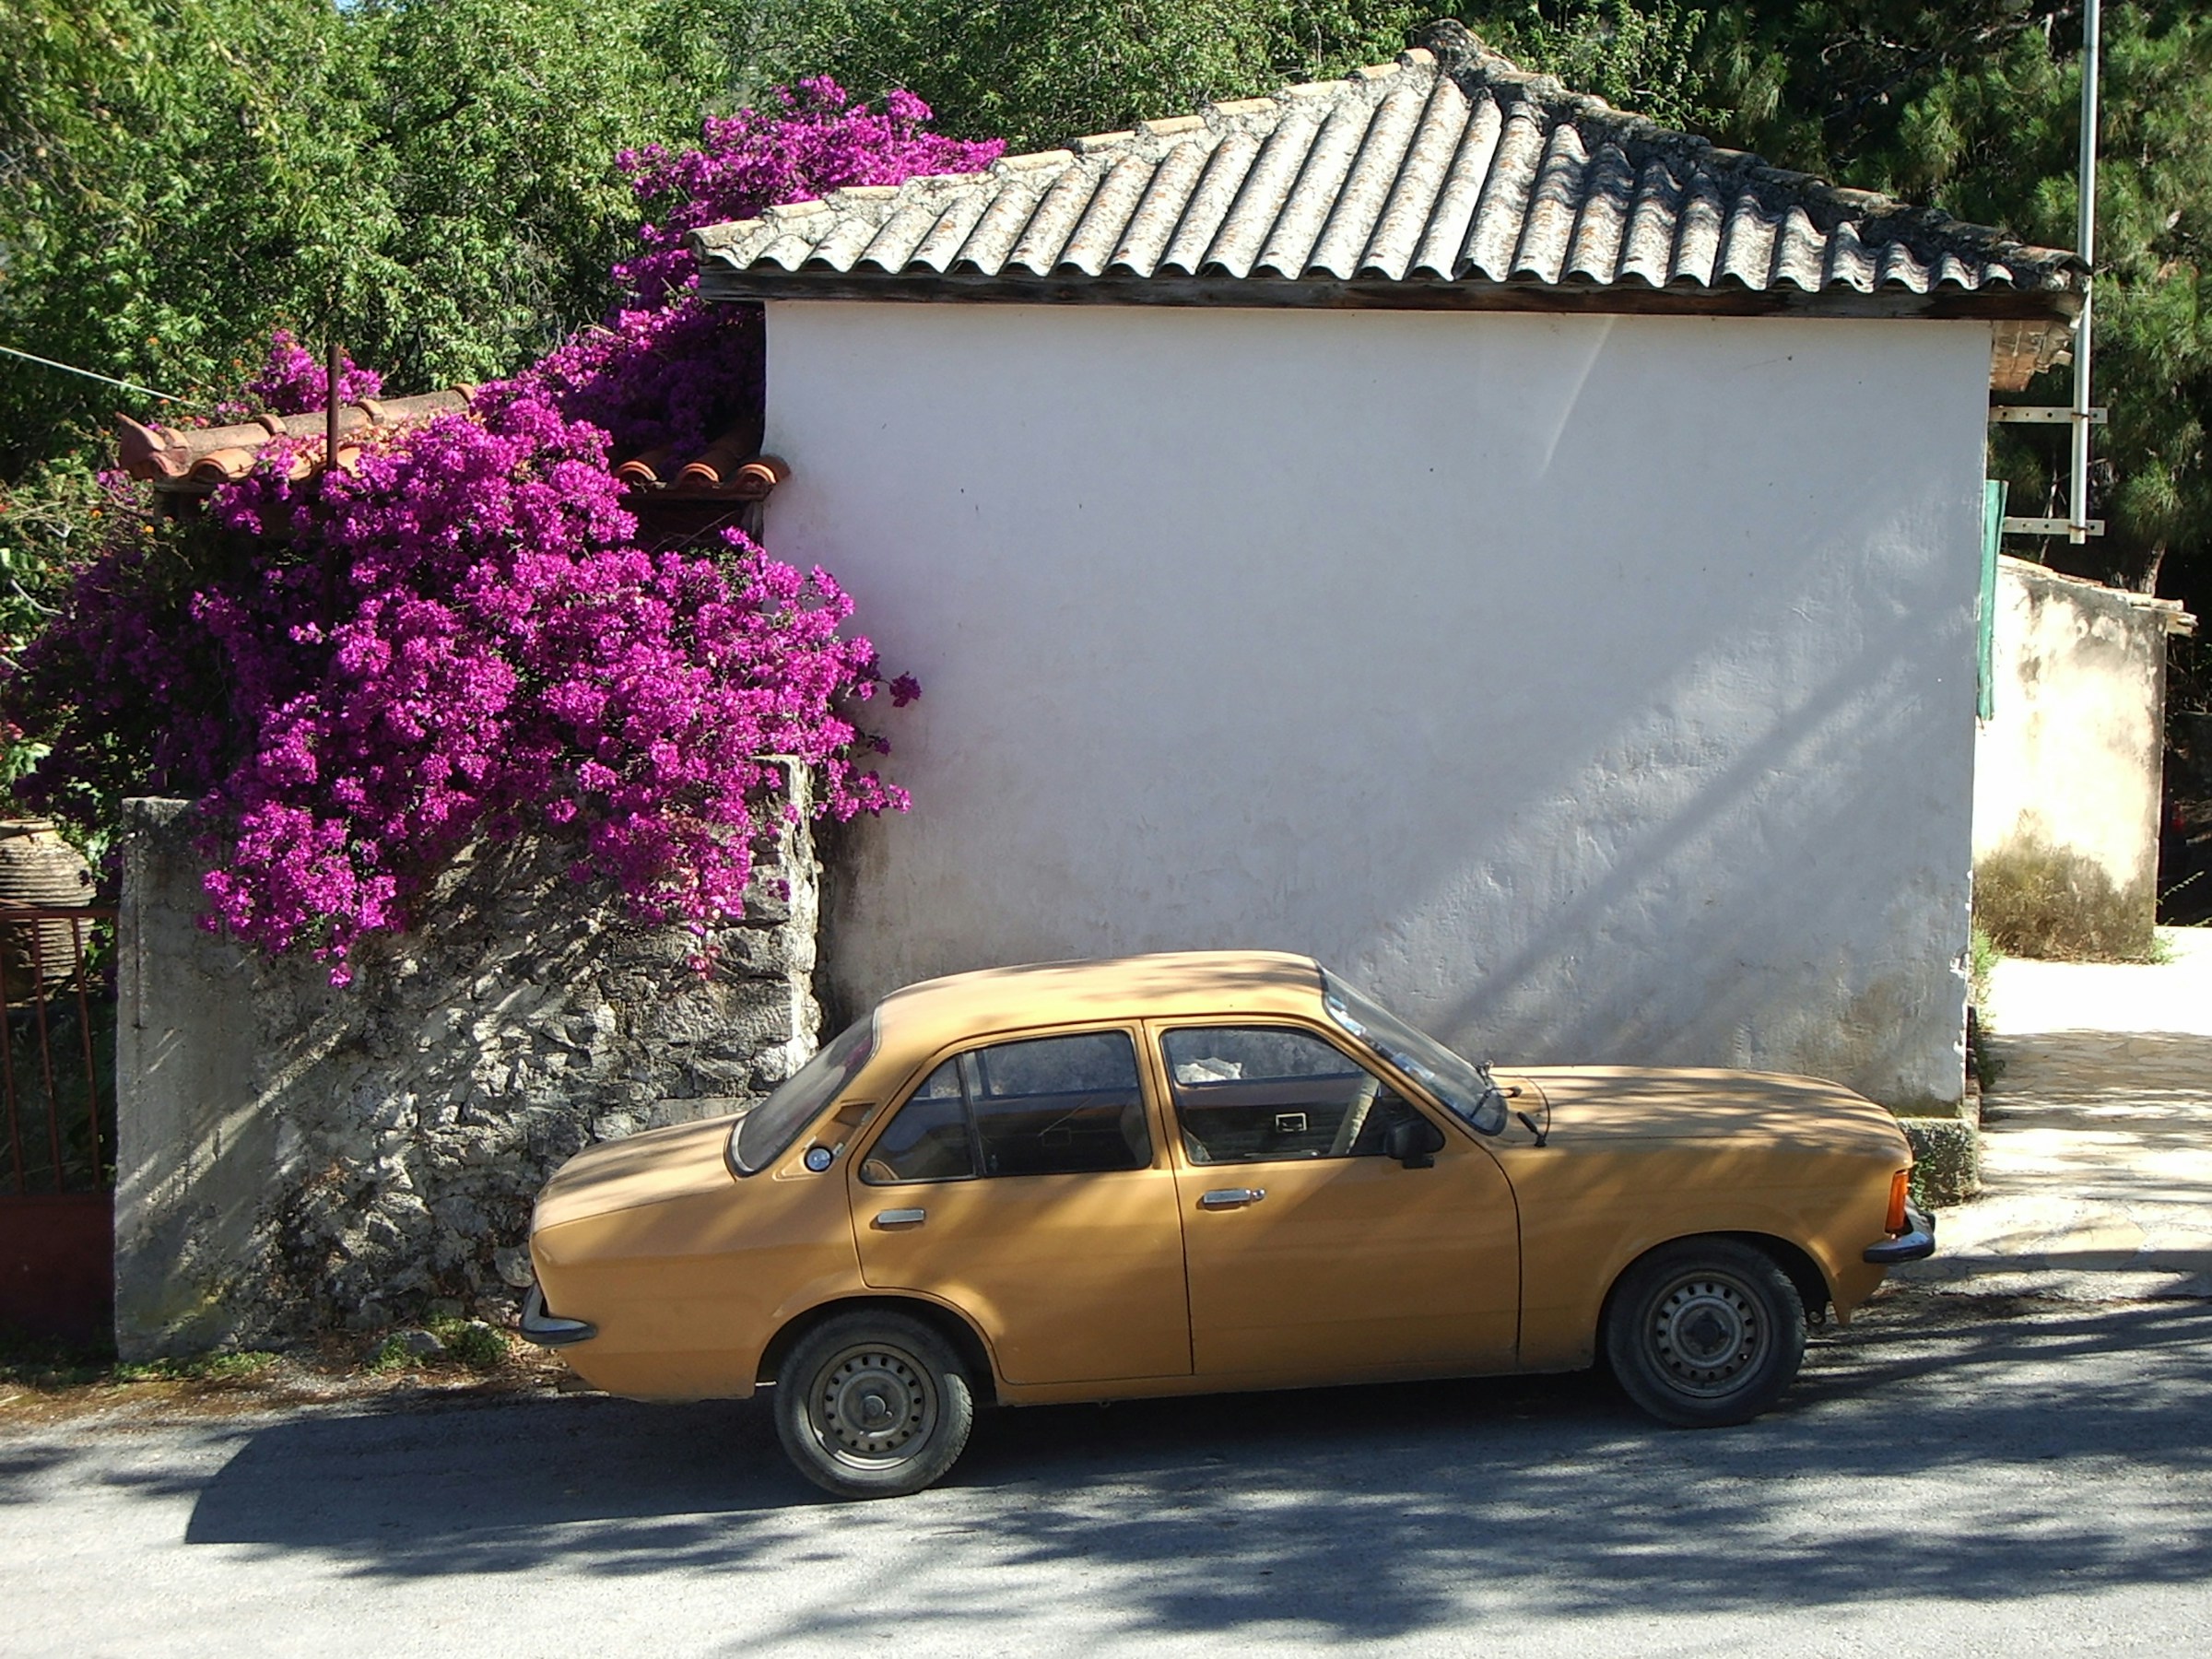 Gul veteranbil parkerad bredvid en vit vägg med lila bougainvillea i blom ovanför i soligt landskap på Zakynthos